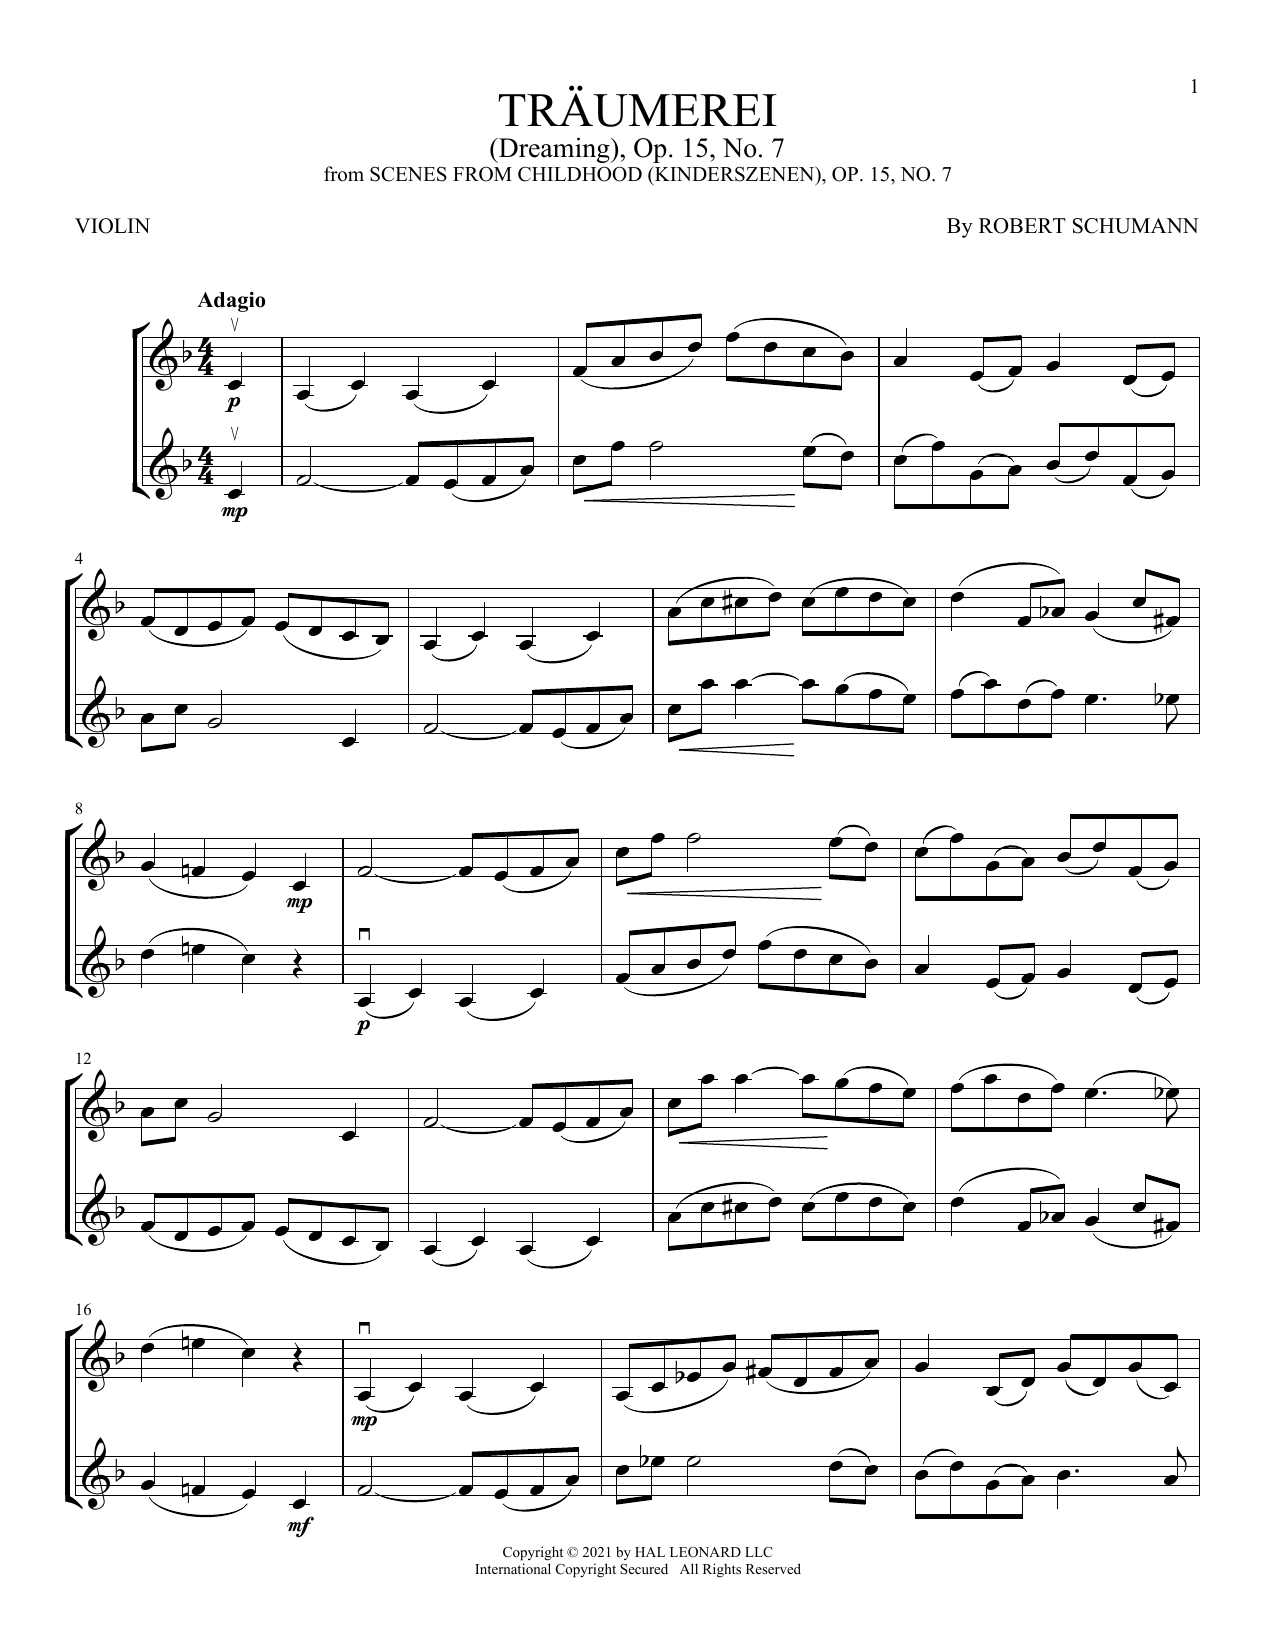 Download Robert Schumann Traumerei (Dreaming), Op. 15, No. 7 Sheet Music